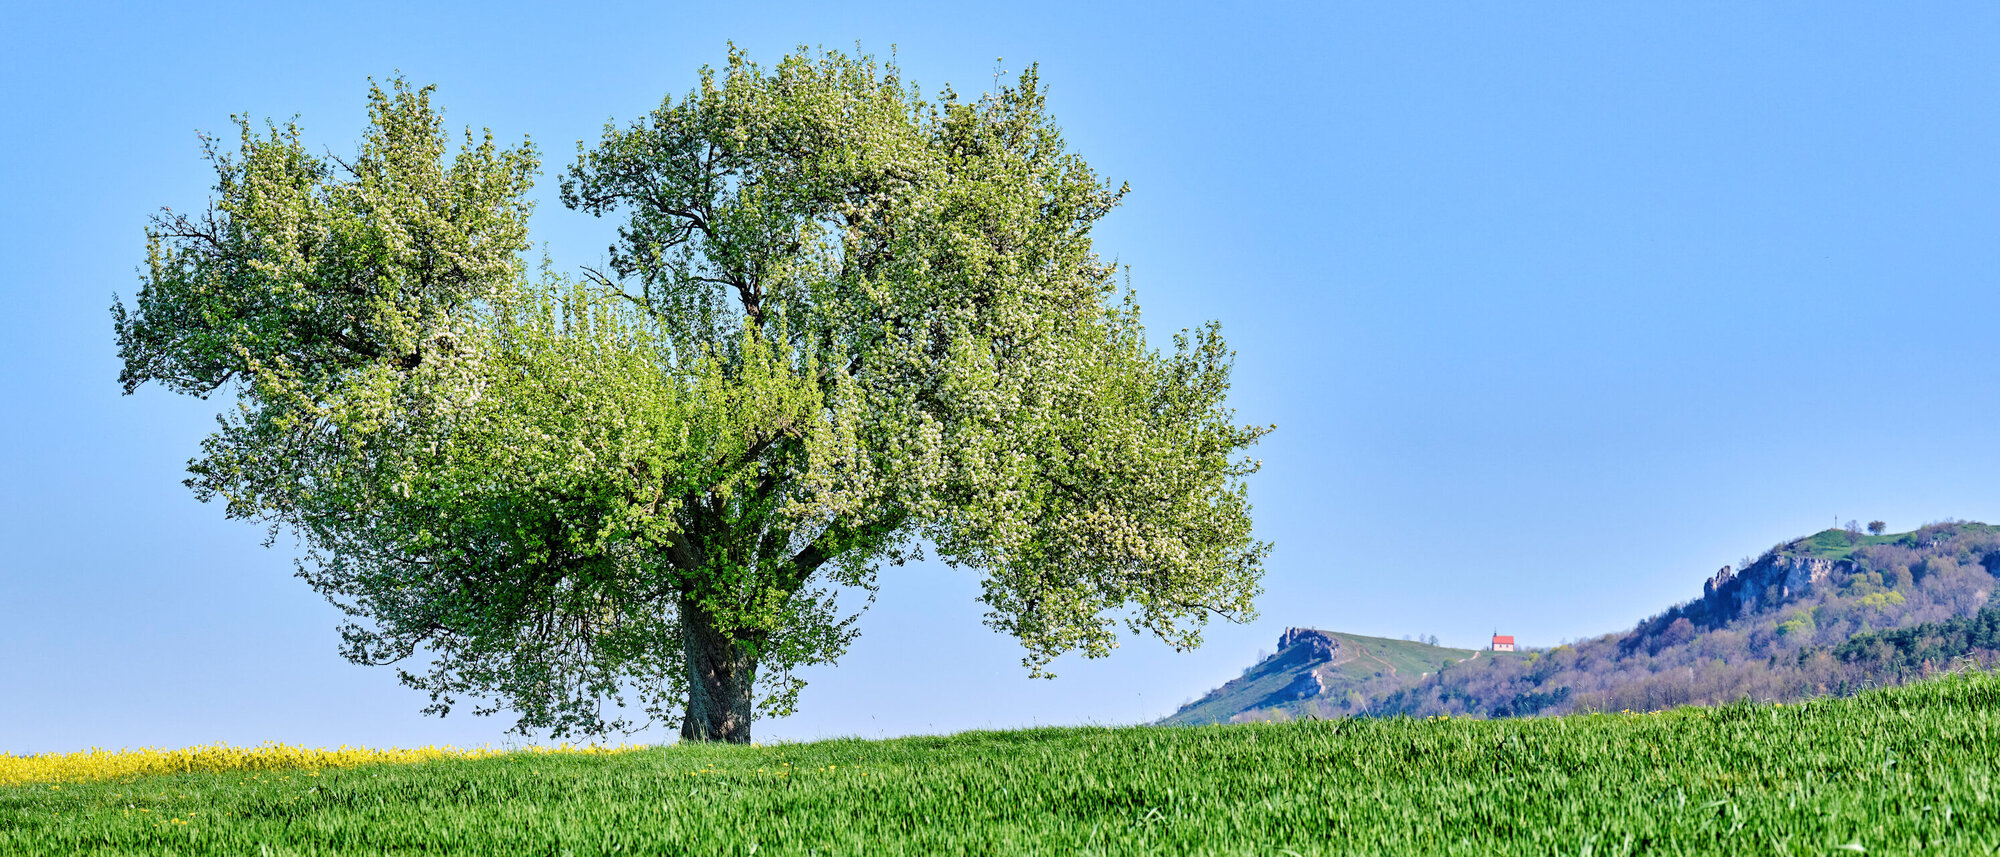 Im Vordergrund steht ein großer Baum auf einer grünen Wiese. Im Hintergrund erhebt sich das Walberla.